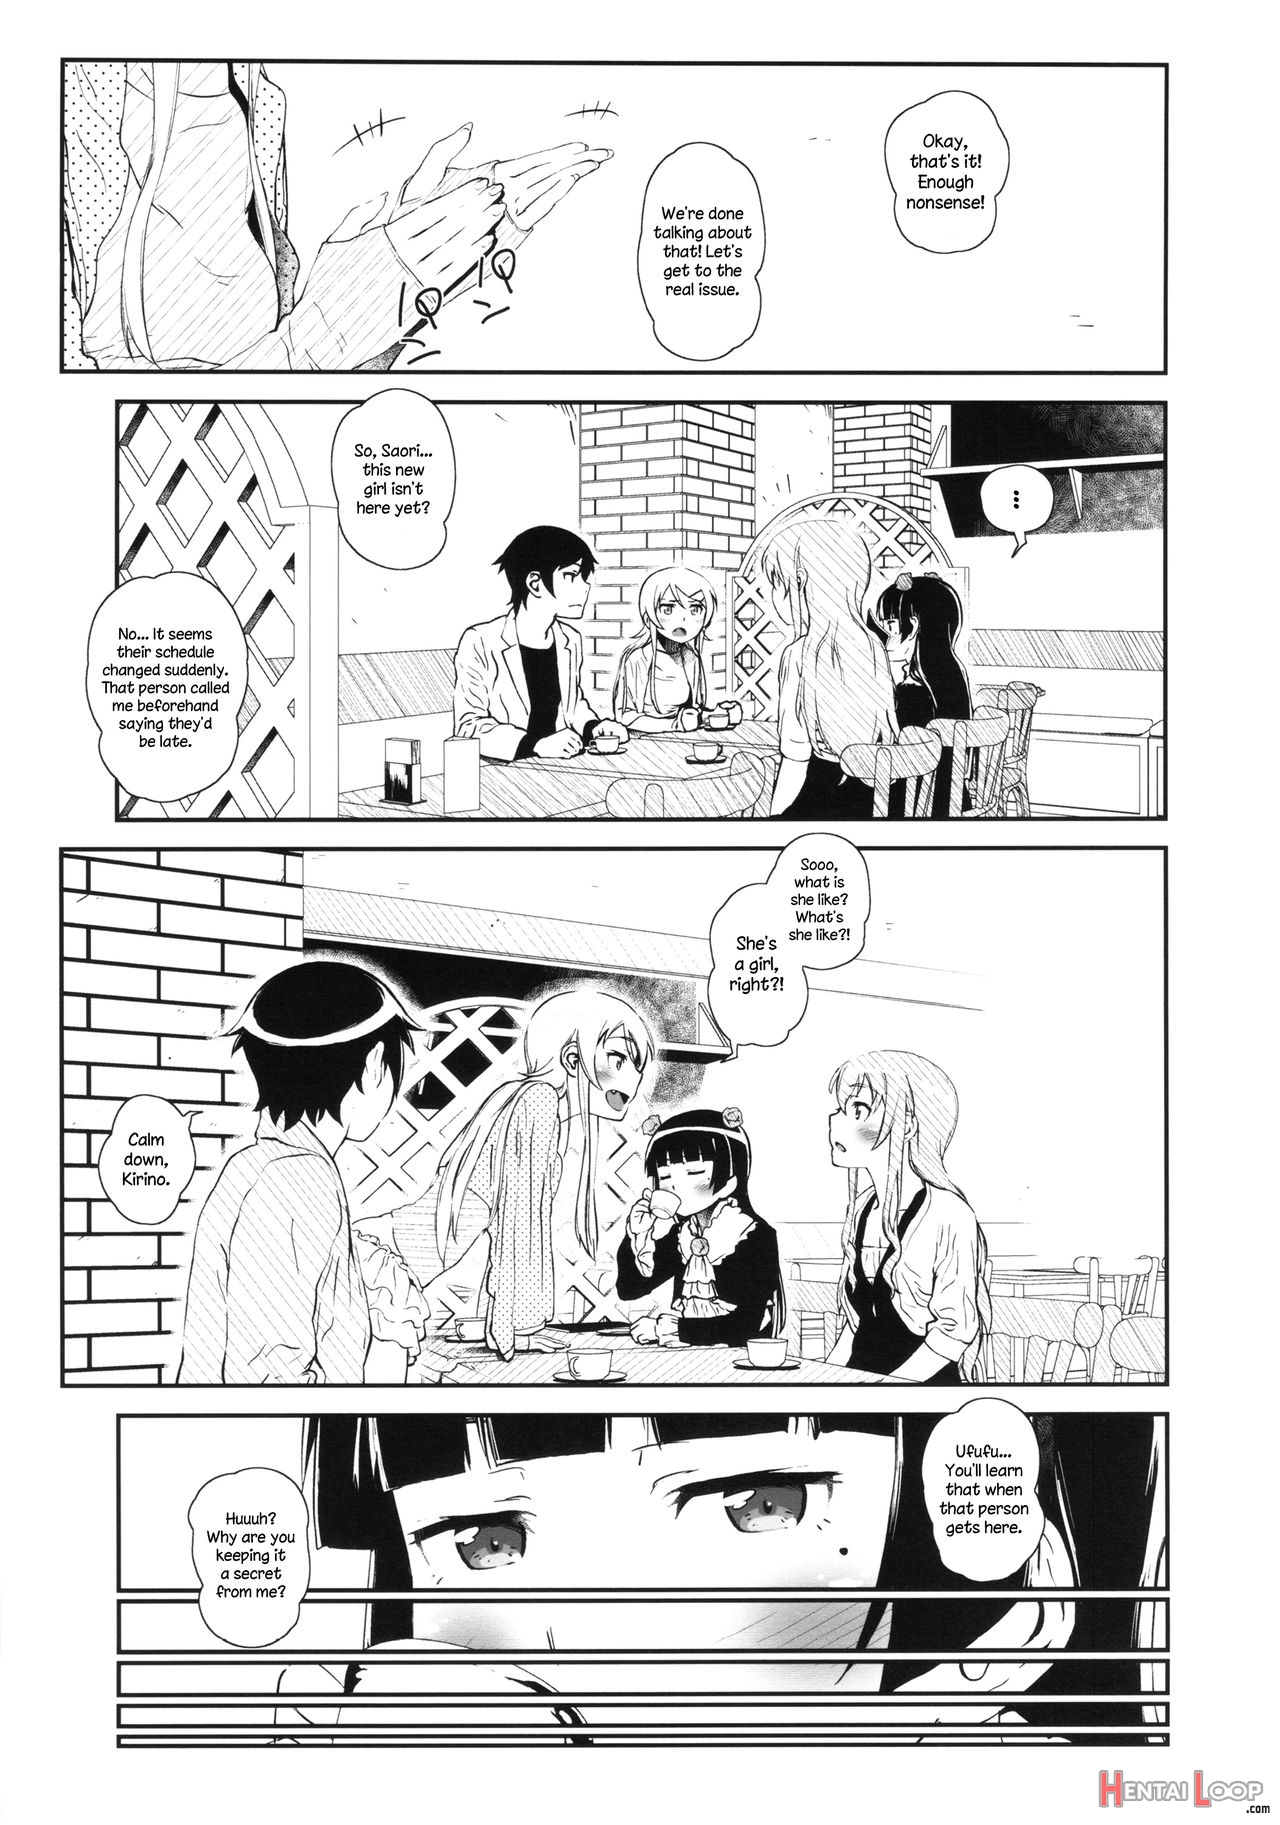 Hoshikuzu Namida 3 page 5